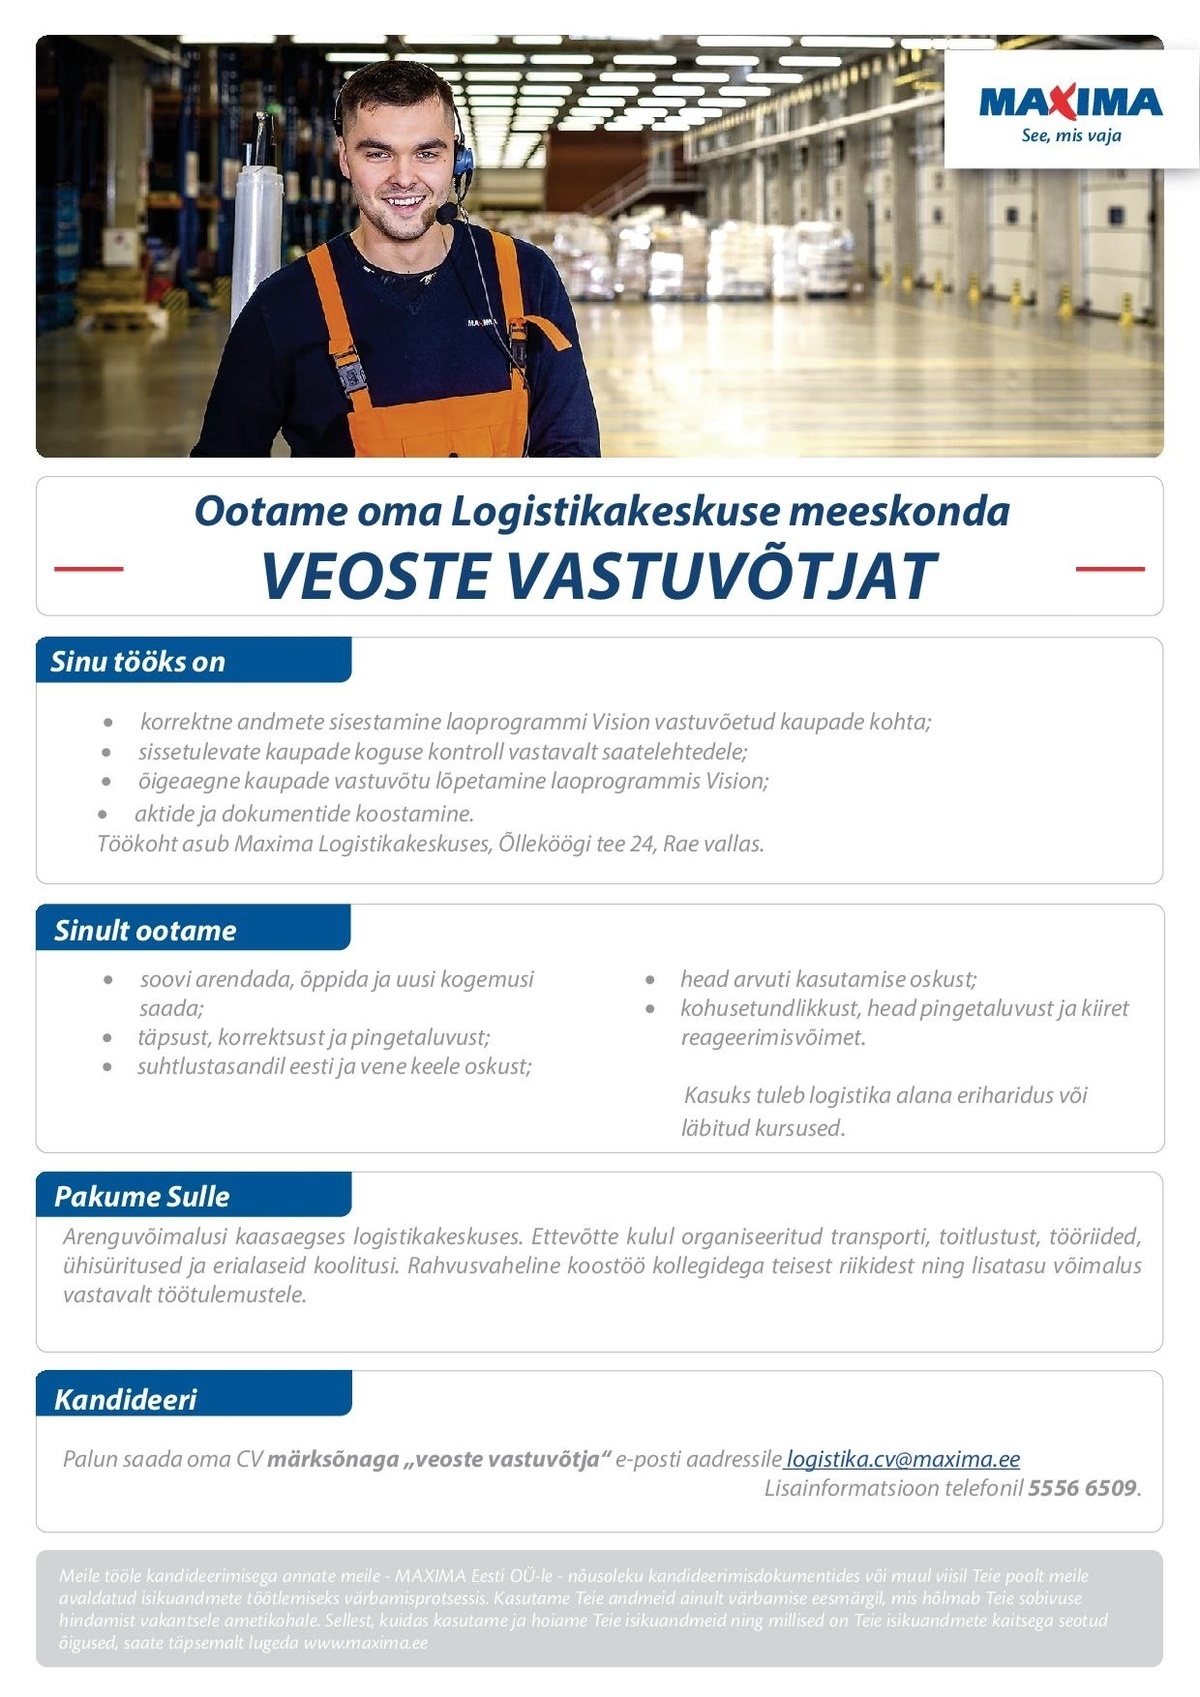 Maxima Eesti OÜ Veoste vastuvõtja Maxima Logistikakeskuses